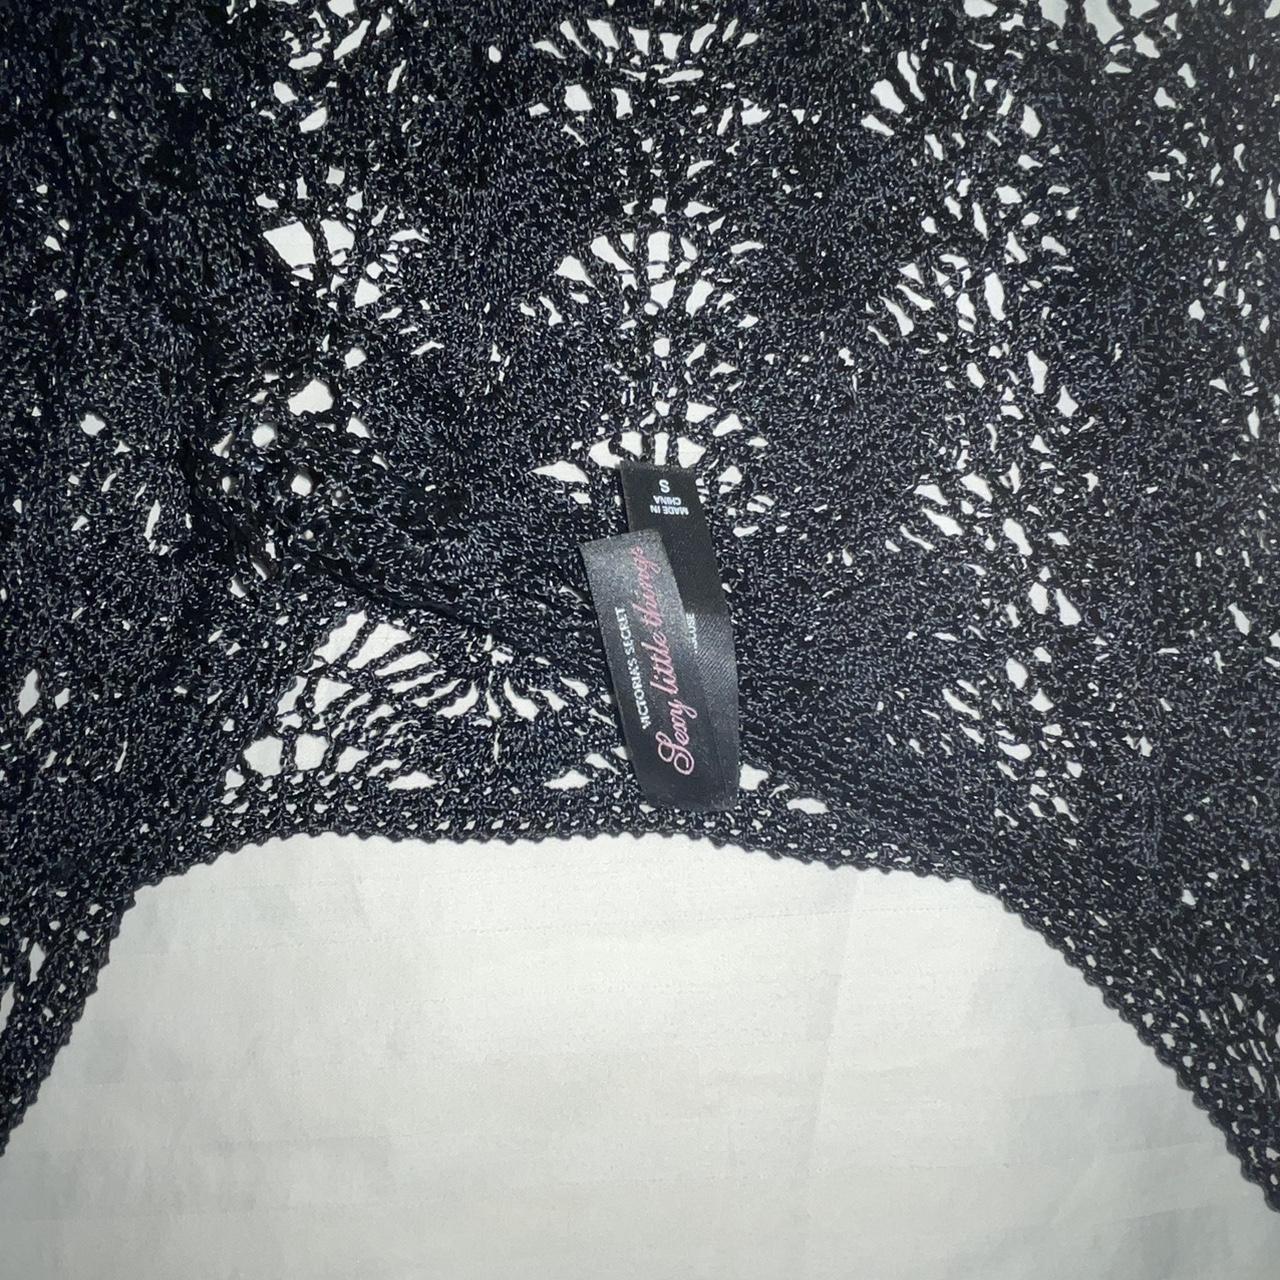 Victoria’s Secret Embroidered, Crocheted, Vintage... - Depop